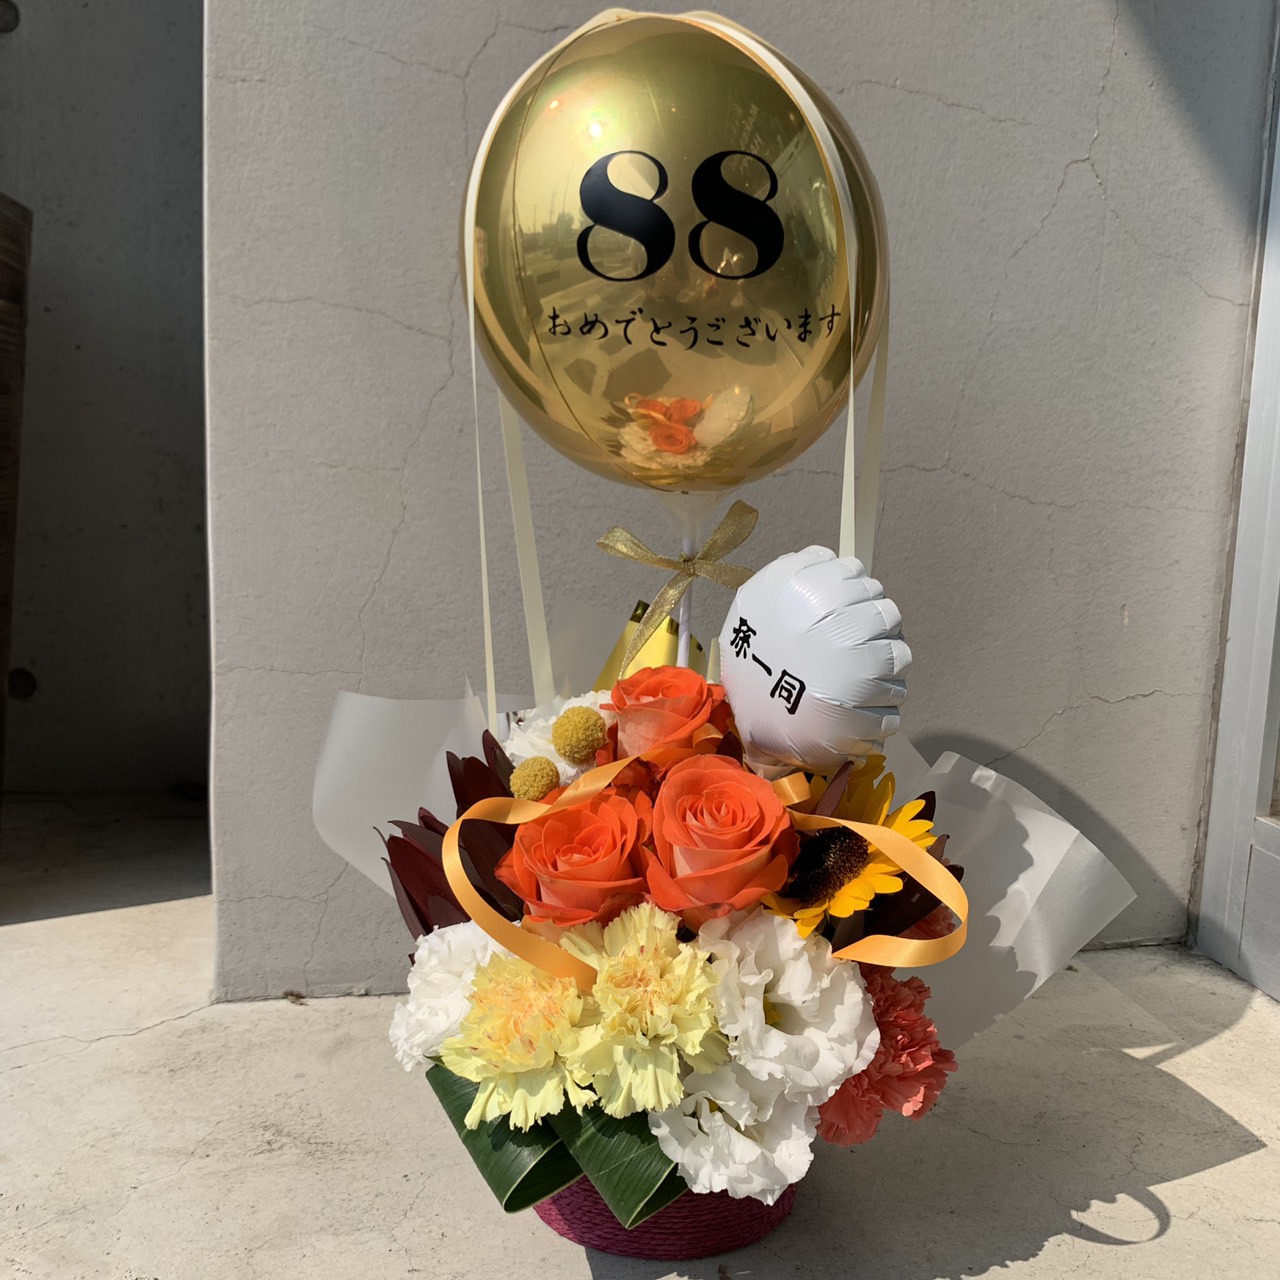 米寿のお祝いに ミラーバルーンのアレンジ 熊本の花屋 バルーンショップkiki 光の森の花 バルーン専門店kiki